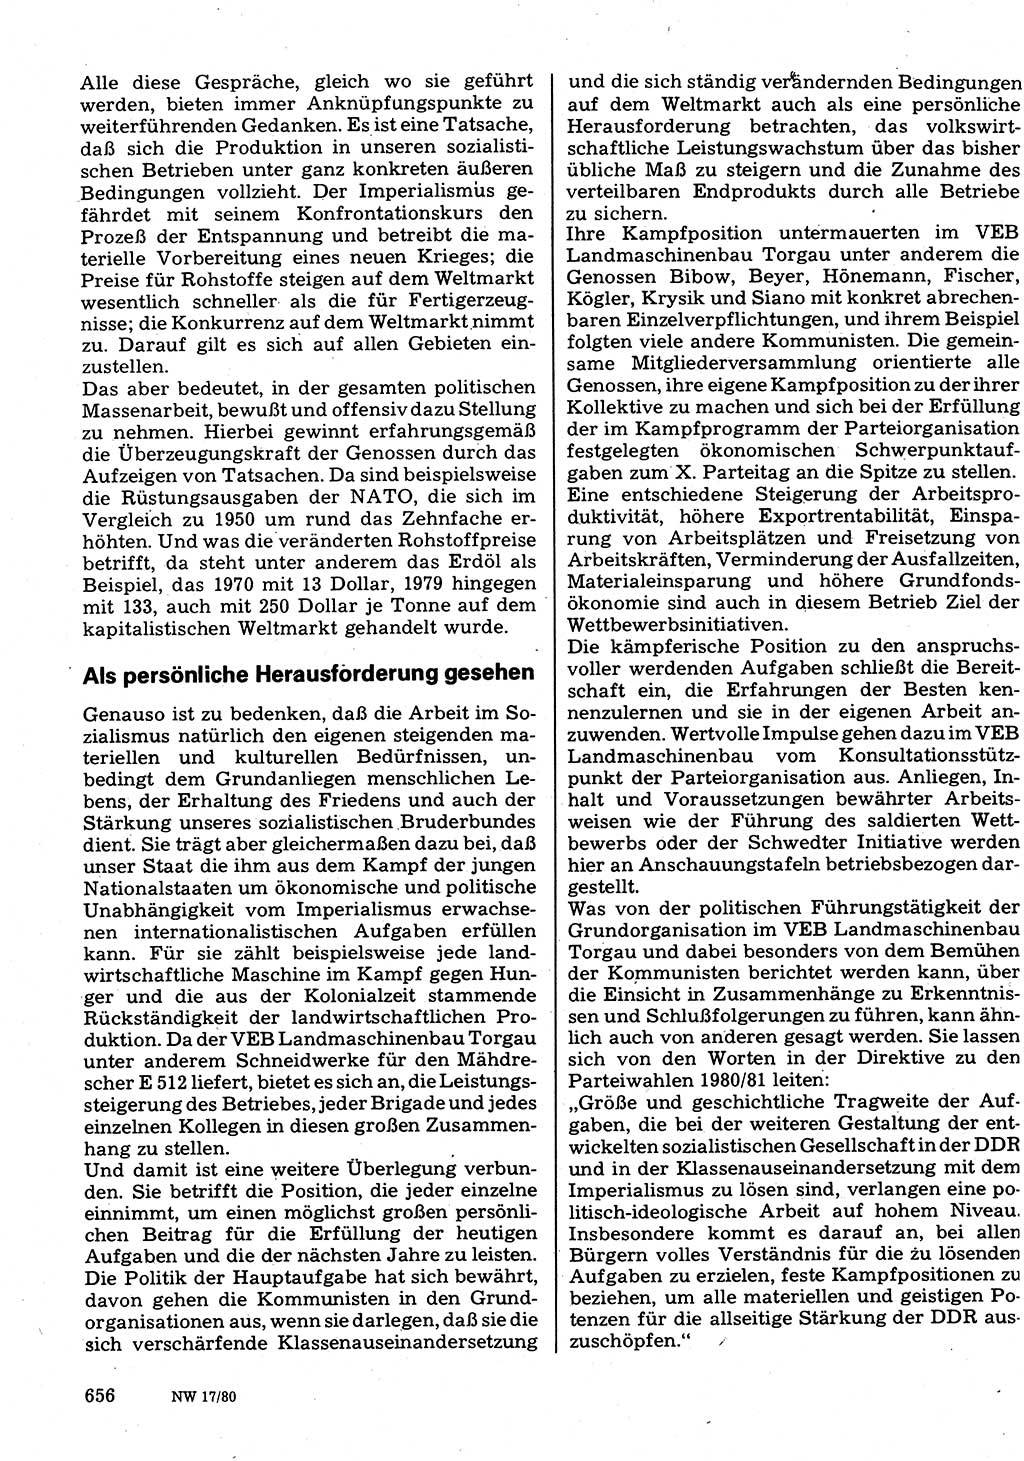 Neuer Weg (NW), Organ des Zentralkomitees (ZK) der SED (Sozialistische Einheitspartei Deutschlands) für Fragen des Parteilebens, 35. Jahrgang [Deutsche Demokratische Republik (DDR)] 1980, Seite 656 (NW ZK SED DDR 1980, S. 656)